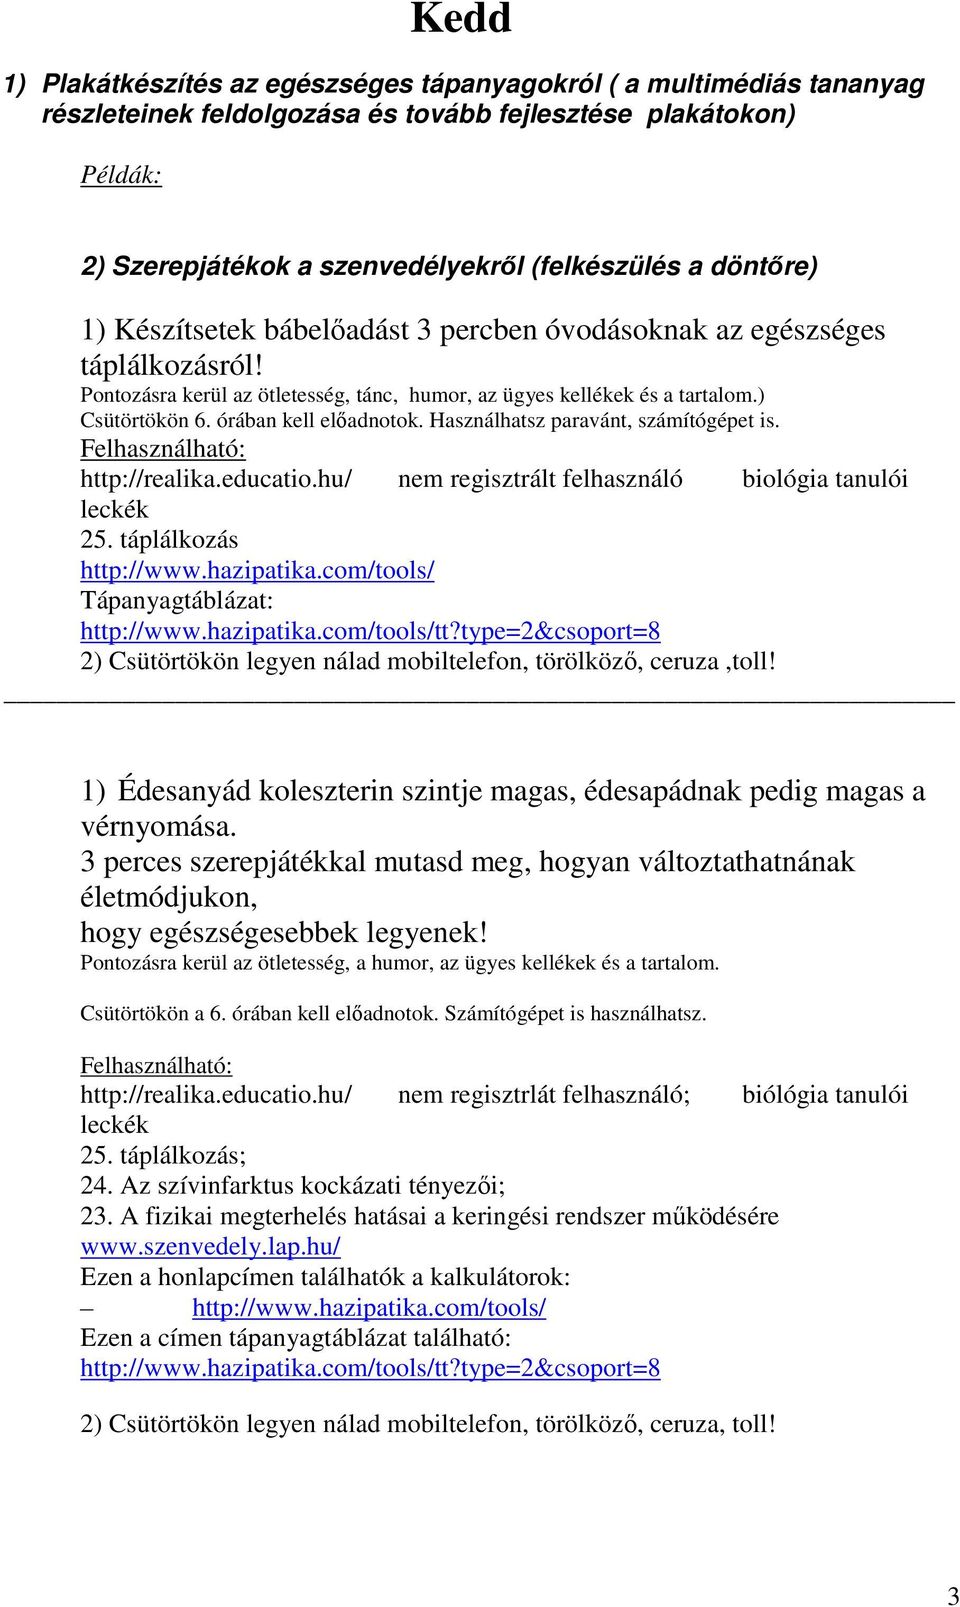 órában kell elıadnotok. Használhatsz paravánt, számítógépet is. Felhasználható: http://realika.educatio.hu/ nem regisztrált felhasználó biológia tanulói leckék 25. táplálkozás http://www.hazipatika.